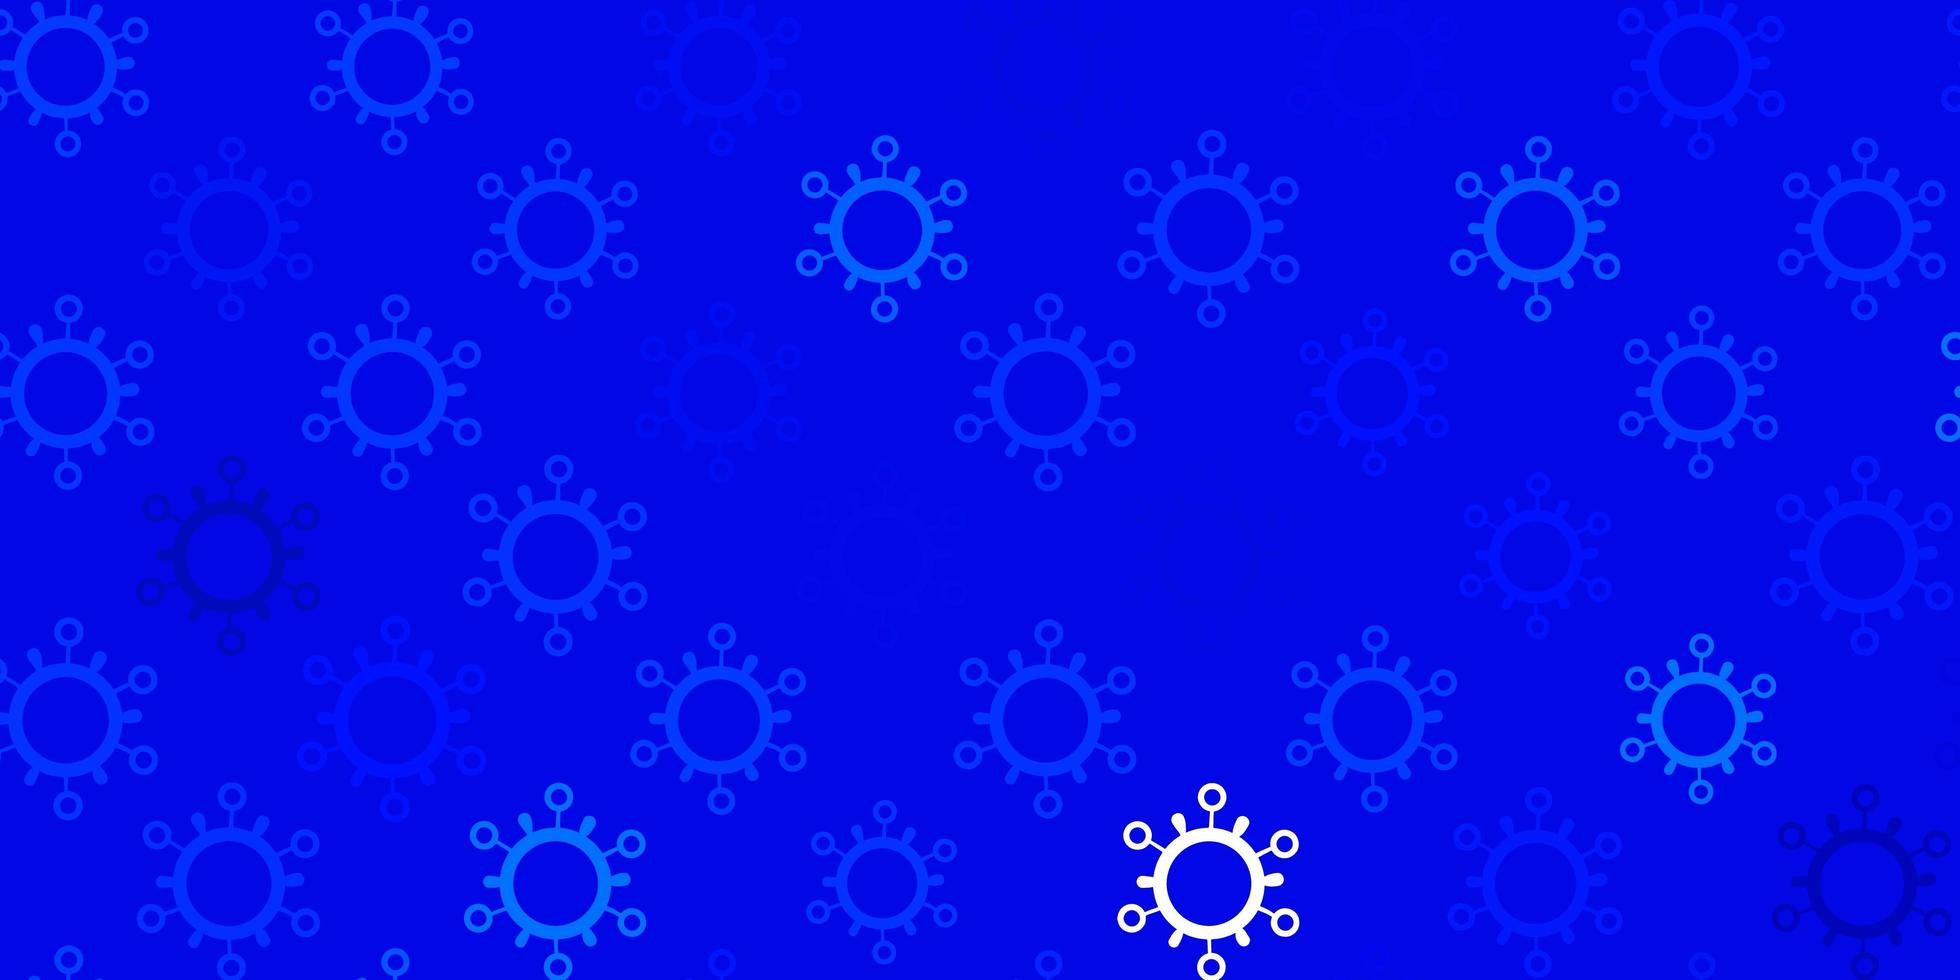 struttura di vettore blu chiaro con simboli di malattia